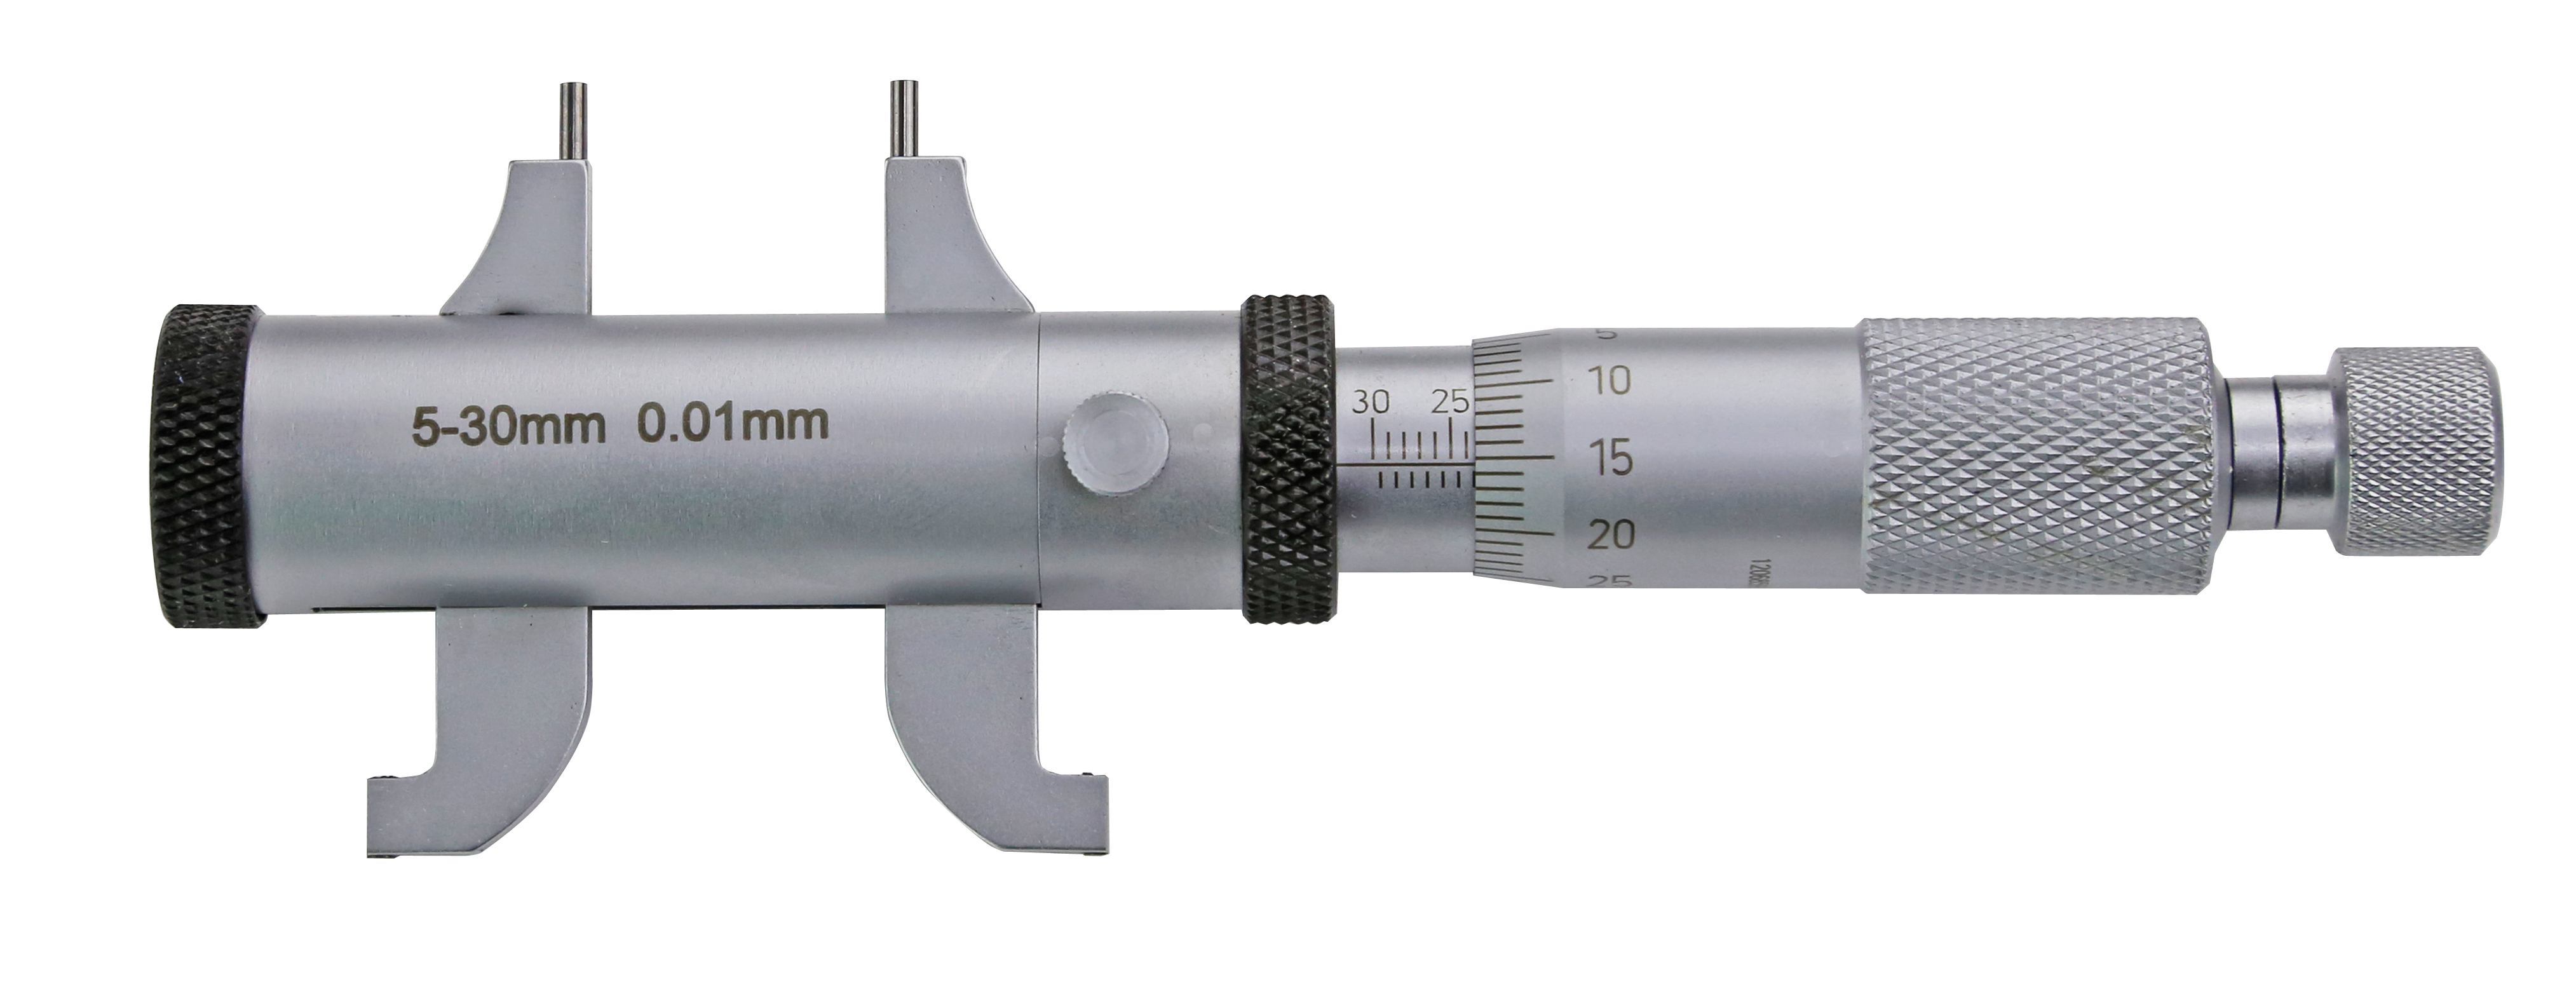 Innenmessschraube Mikrometer 5-30mm 0,01mm Messschraube Messwerkzeug DE 